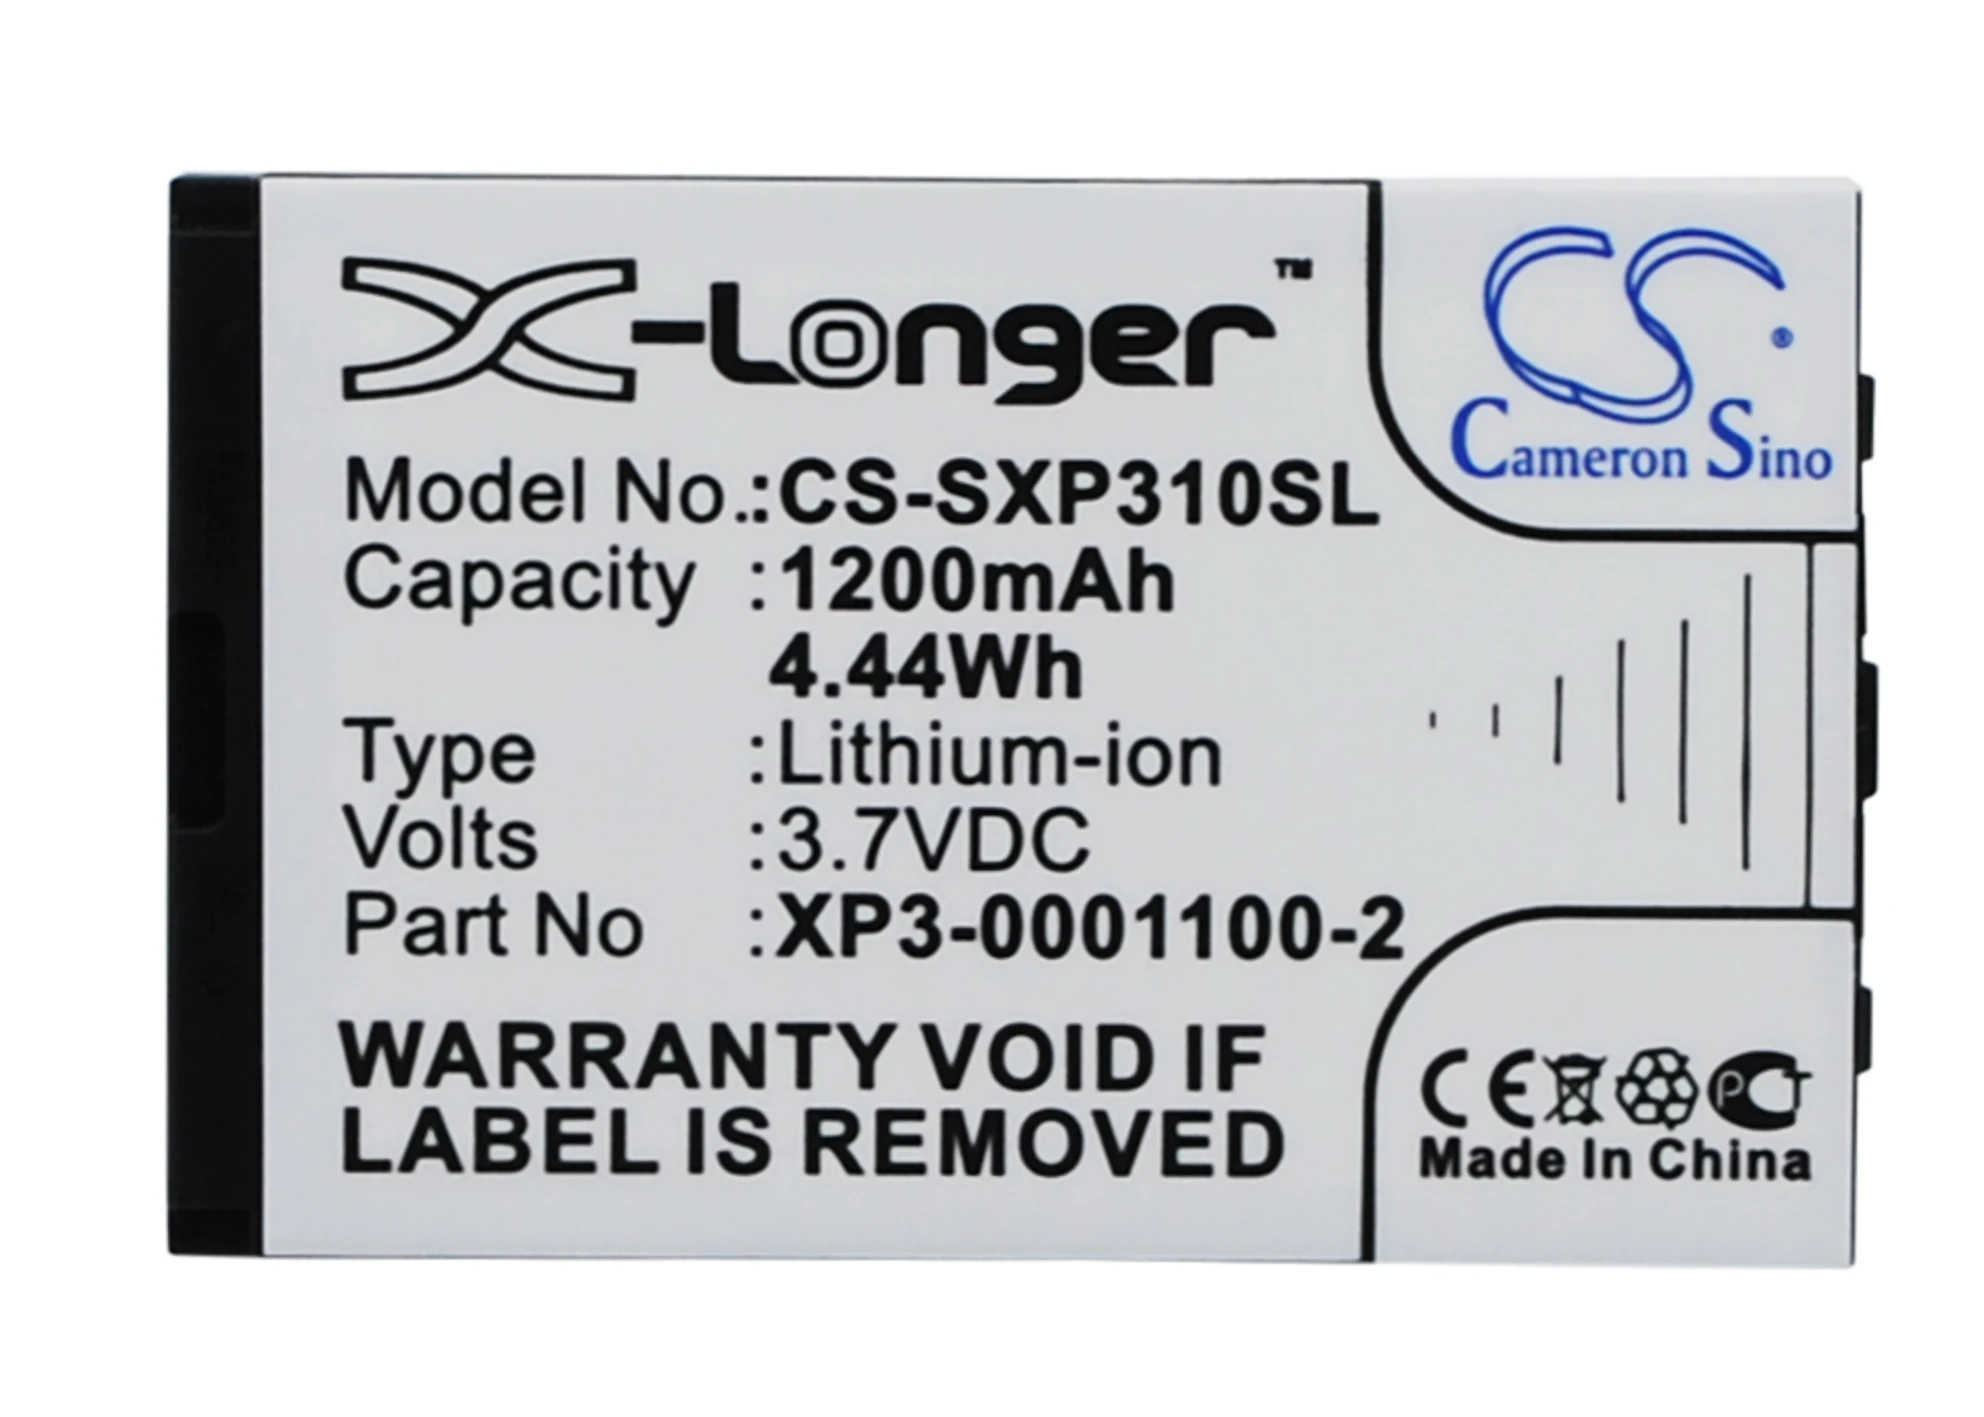 

CS 1200mAh / 4.44Wh battery for Socketmobile Sonim XP3-S, XP3 Enduro XP3-0001100-2